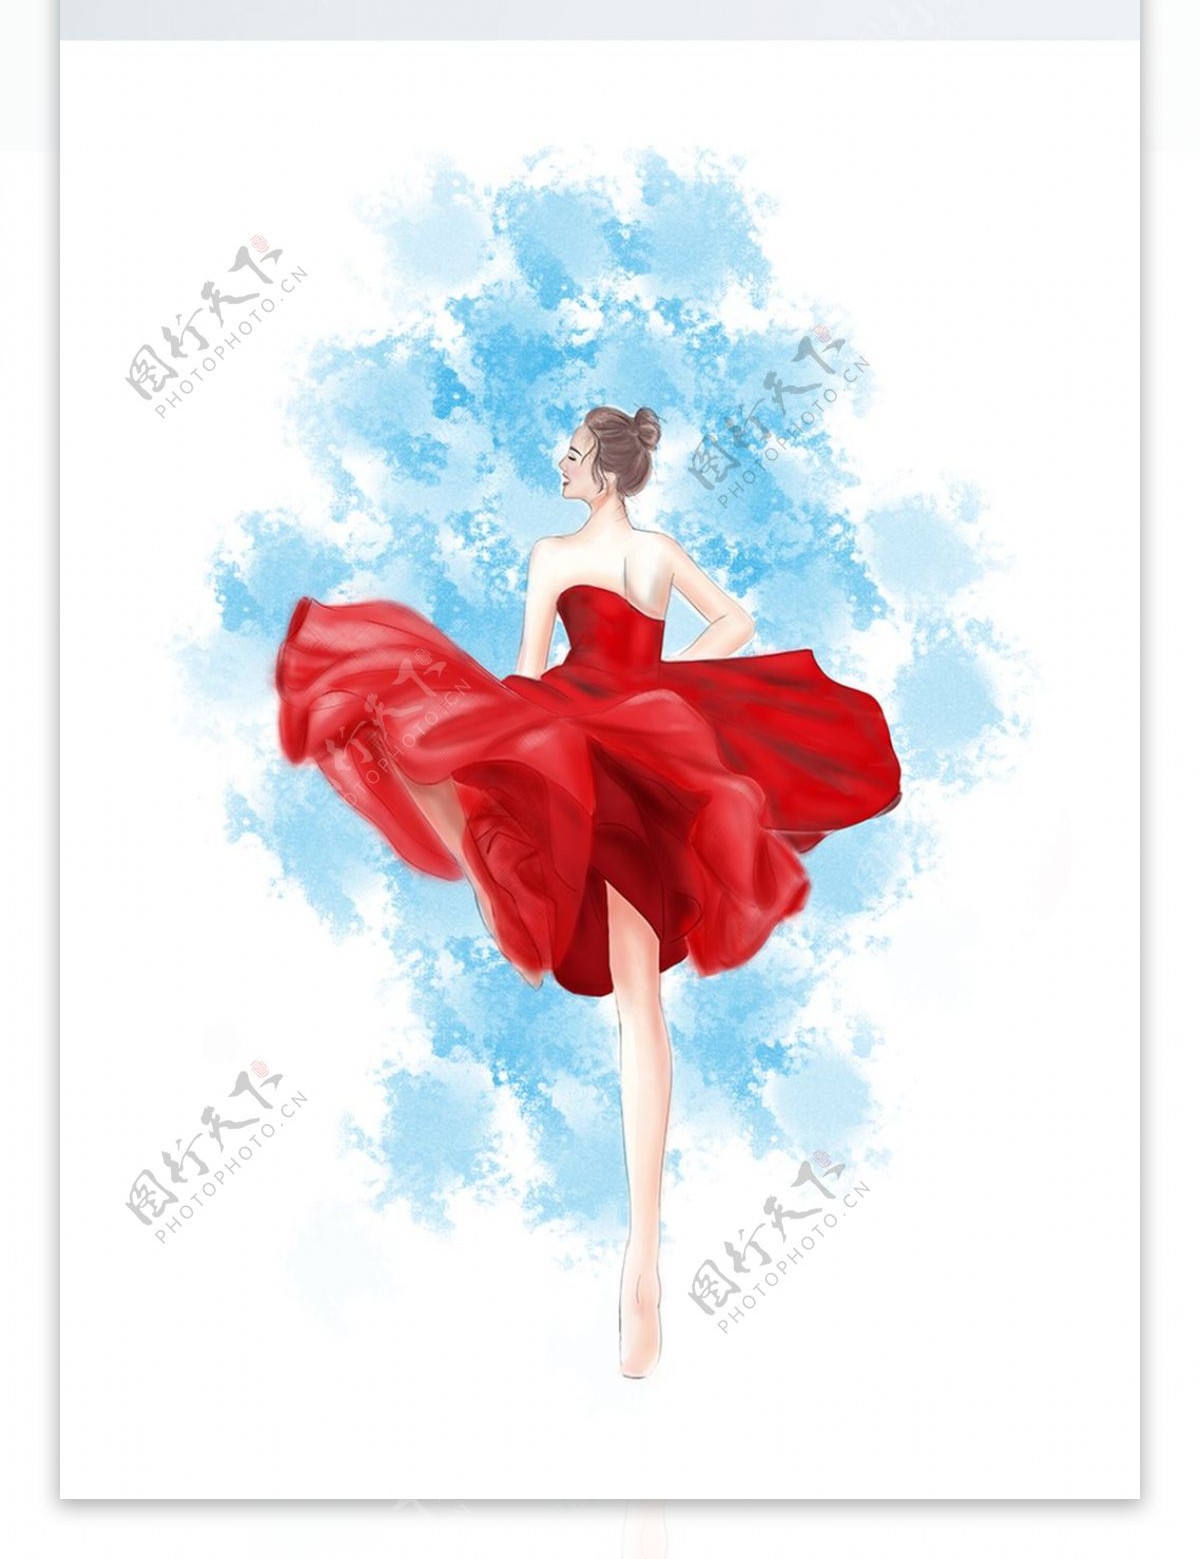 原创手绘起风飞舞的红裙芭蕾舞女孩